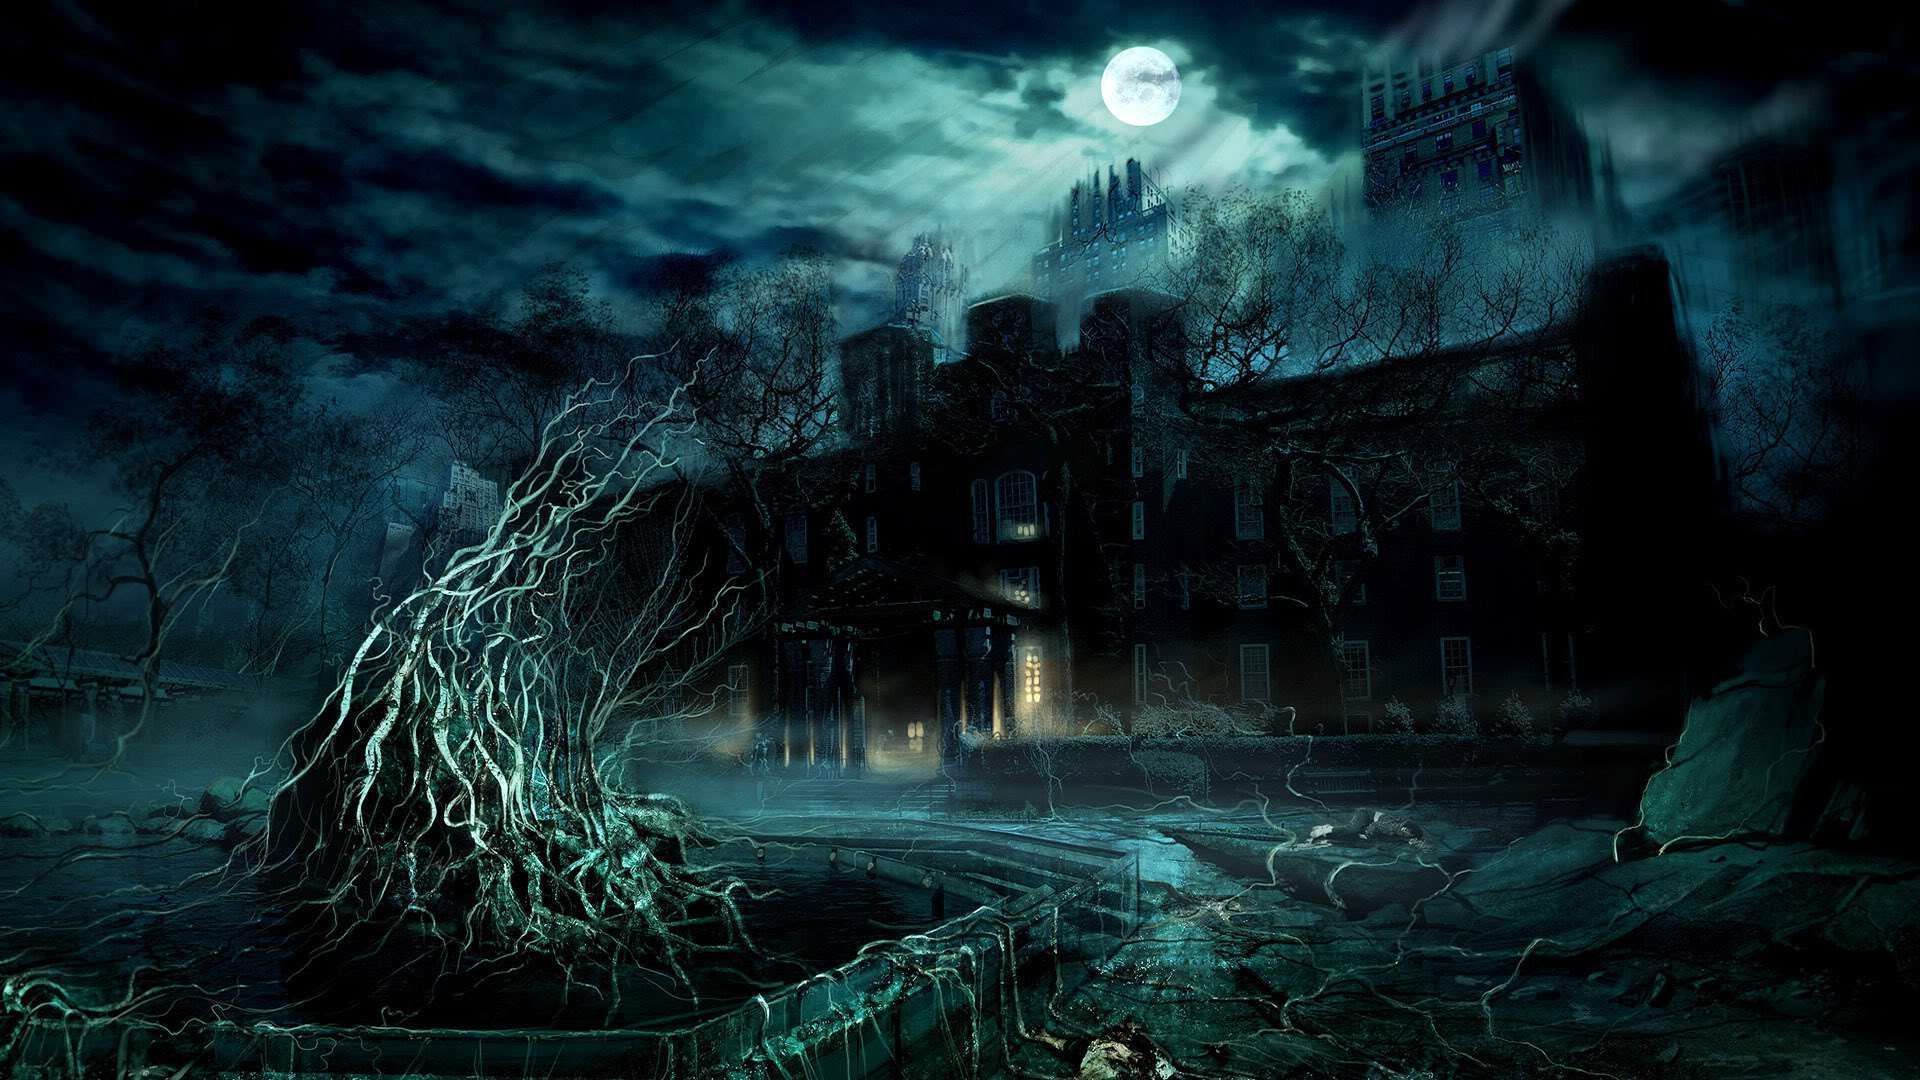 Moonlit #Fantasy Mansion 3D #Wallpaper #moonlight #moon #gothic